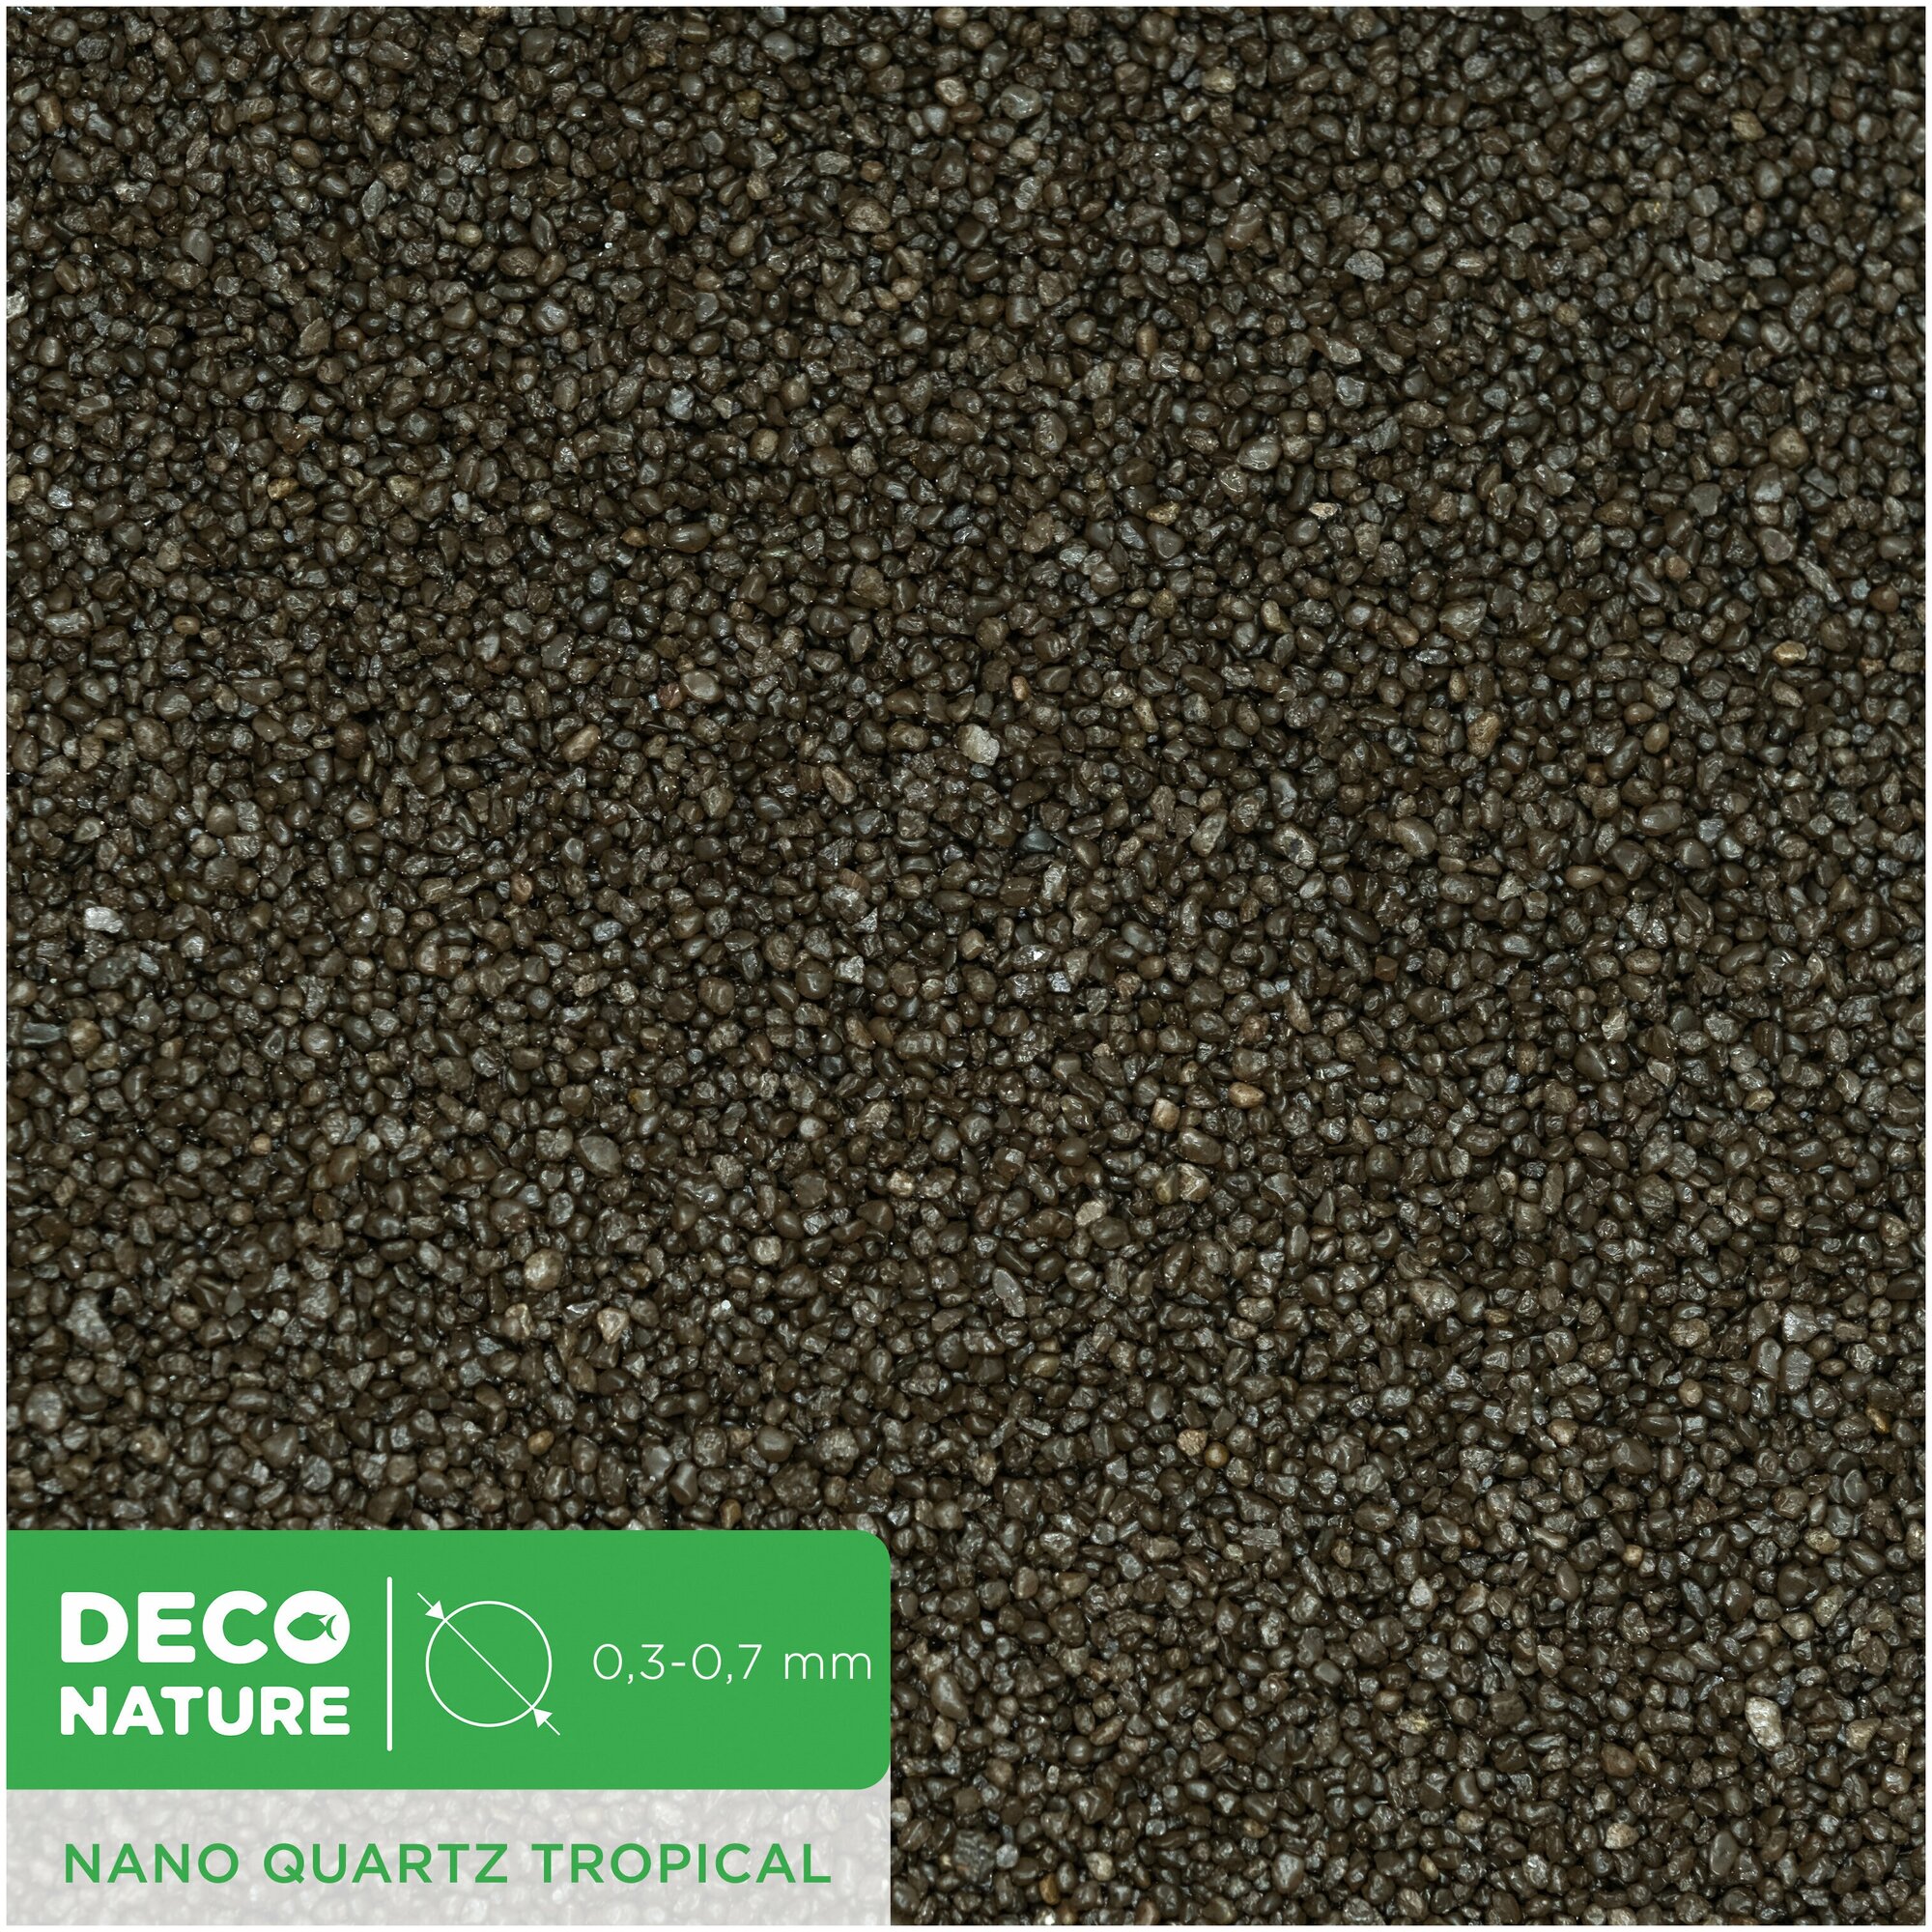 DECO NATURE TROPICAL - Коричнево-черный кварцевый песок фракции 0.3-0.7 мм, 3,5л/5,3кг